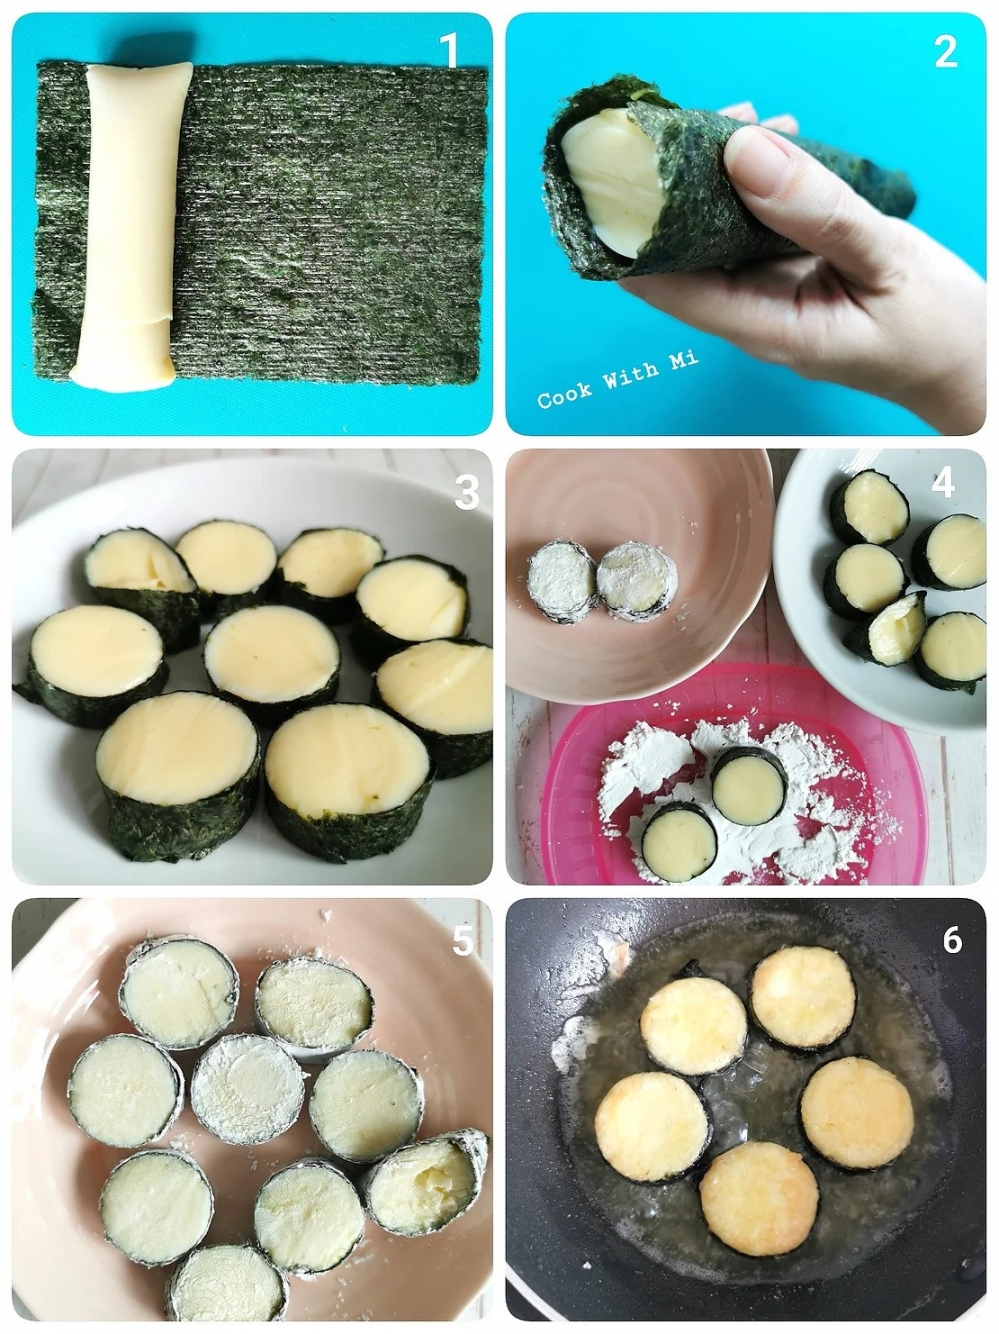 Công thức đậu hũ cuộn rong biển được chia sẻ bởi cô Michelle Lee trên blog Cook with Mi 